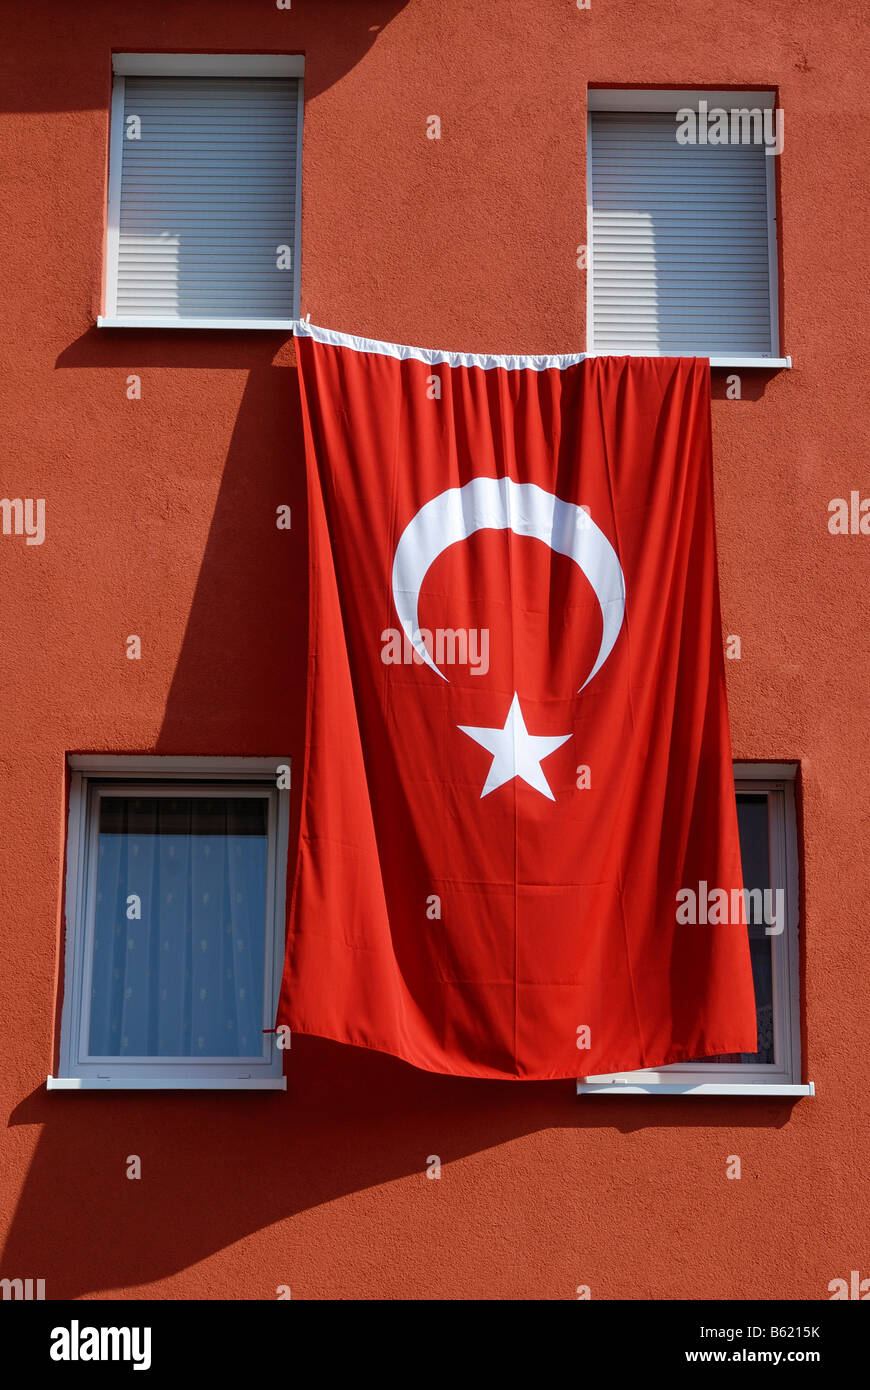 Drapeau national turc accroché au mur d'un immeuble à appartements Banque D'Images